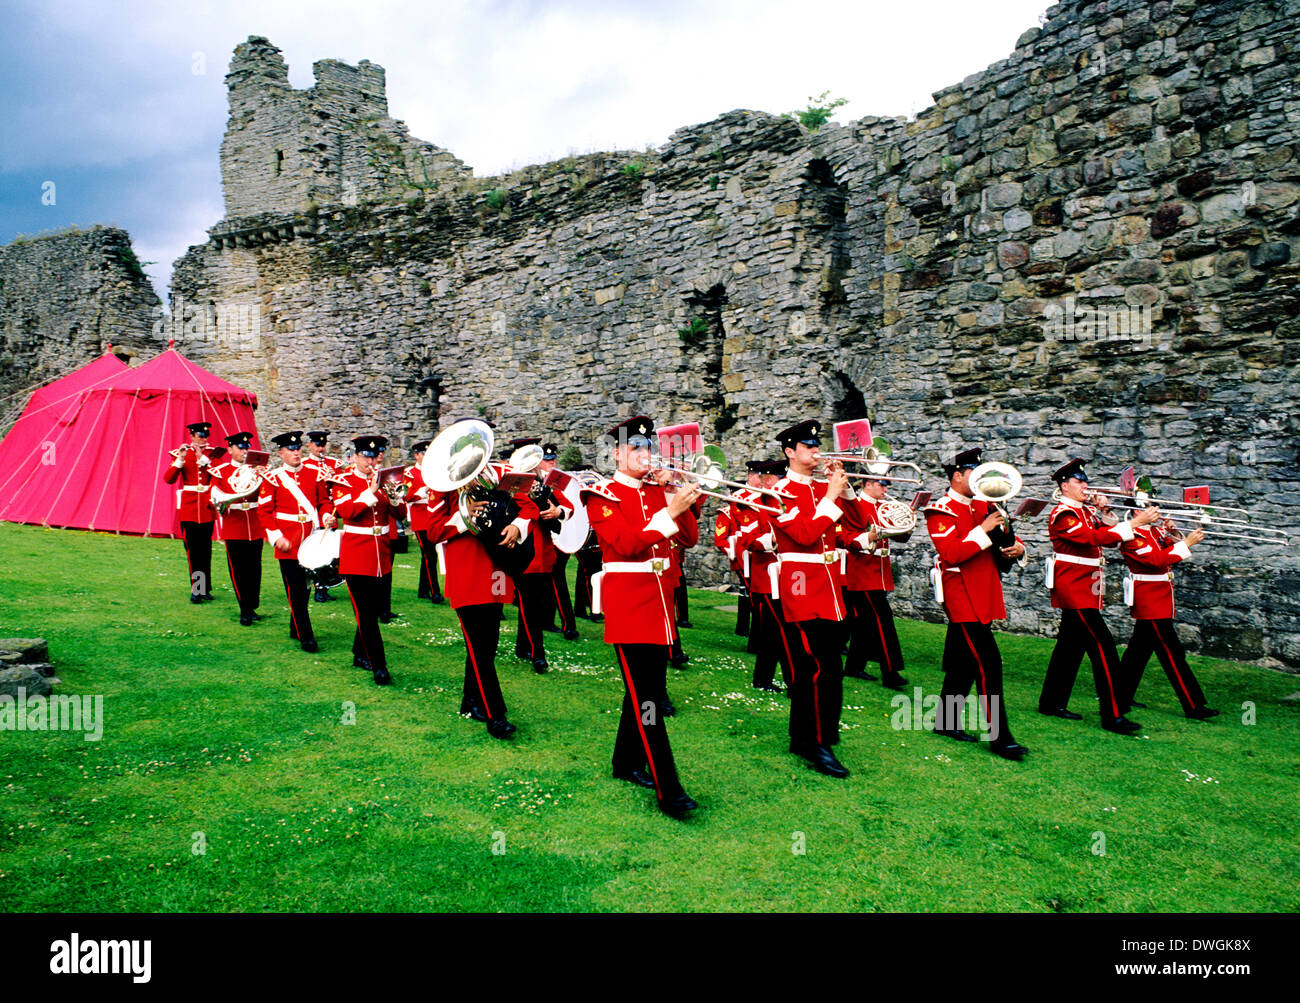 La marche militaire Normandie Brass Band, Château de Richmond, Yorkshire Angleterre Royaume-uni des soldats de l'armée soldat mars musique reconstitution historique des uniformes uniforme des instruments instrument de musique Banque D'Images